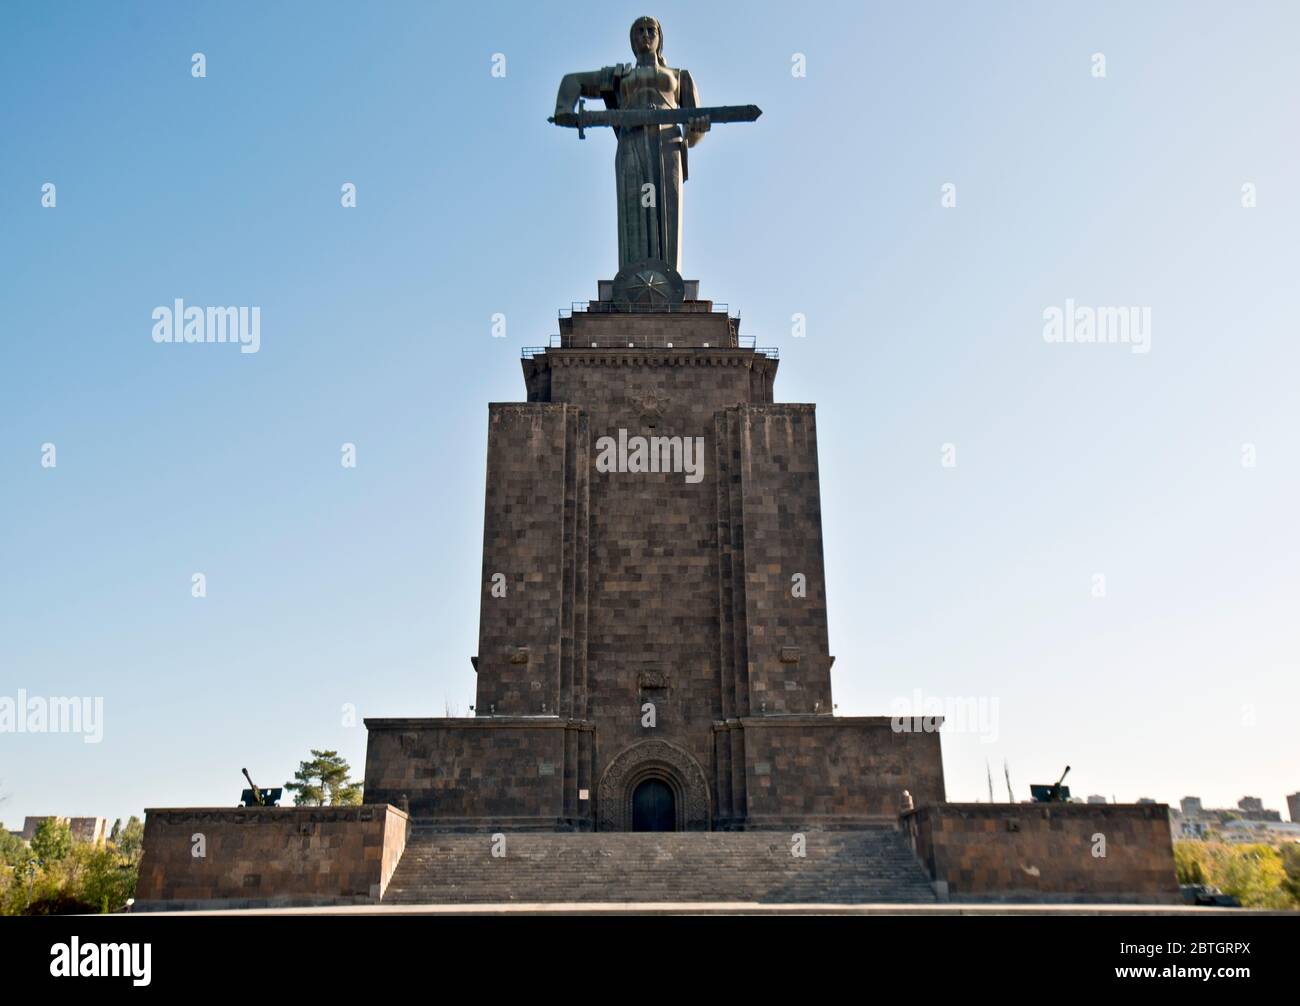 Mother Armenia statue, Yerevan Stock Photo